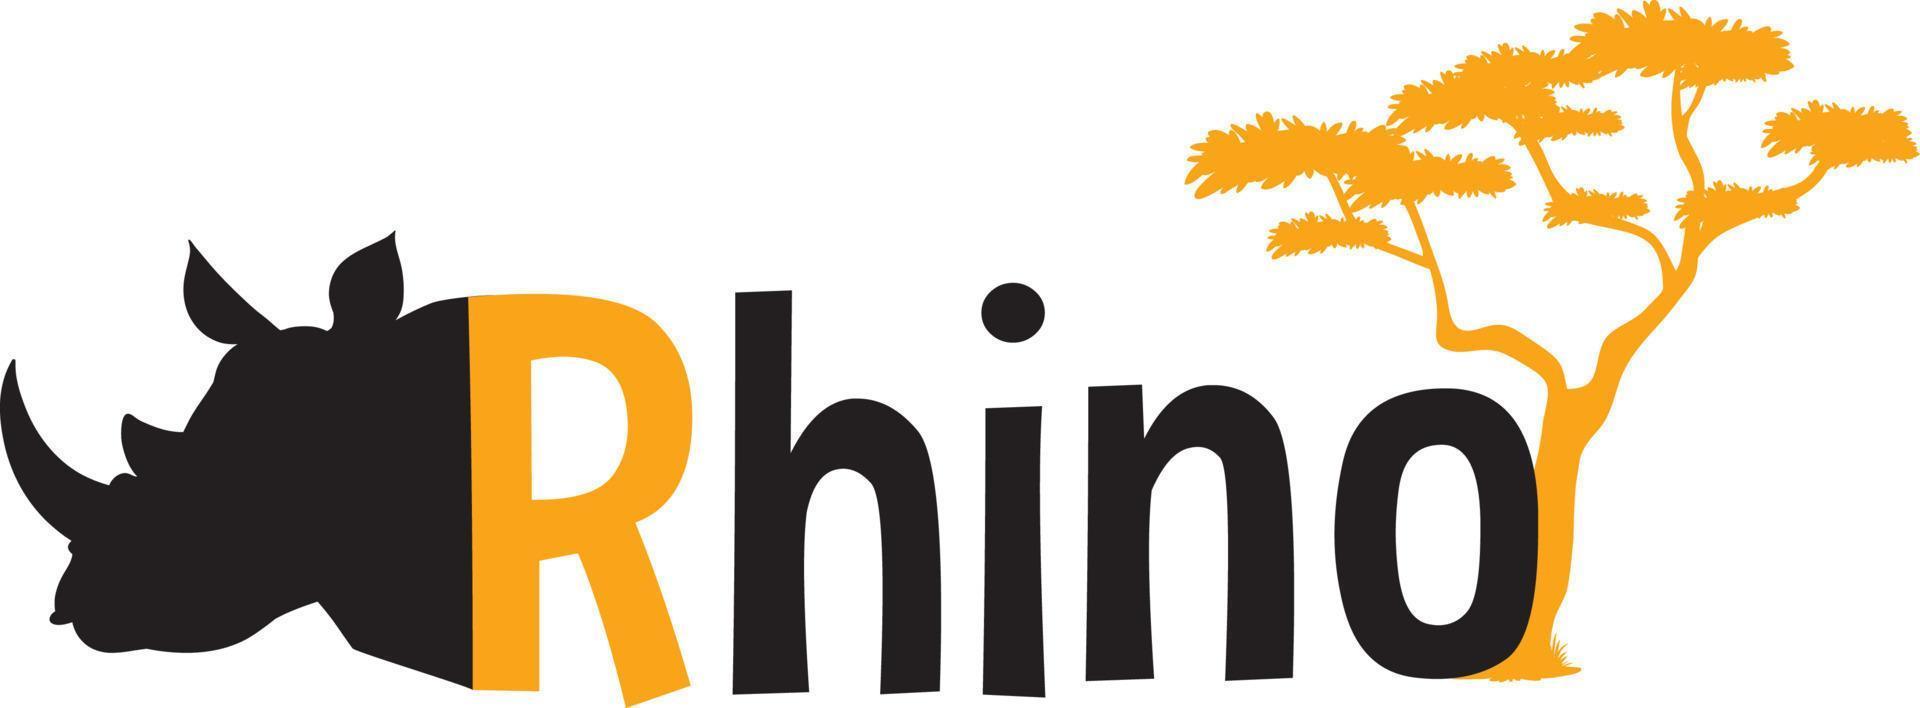 conception de modèle de logo de rhinocéros vecteur